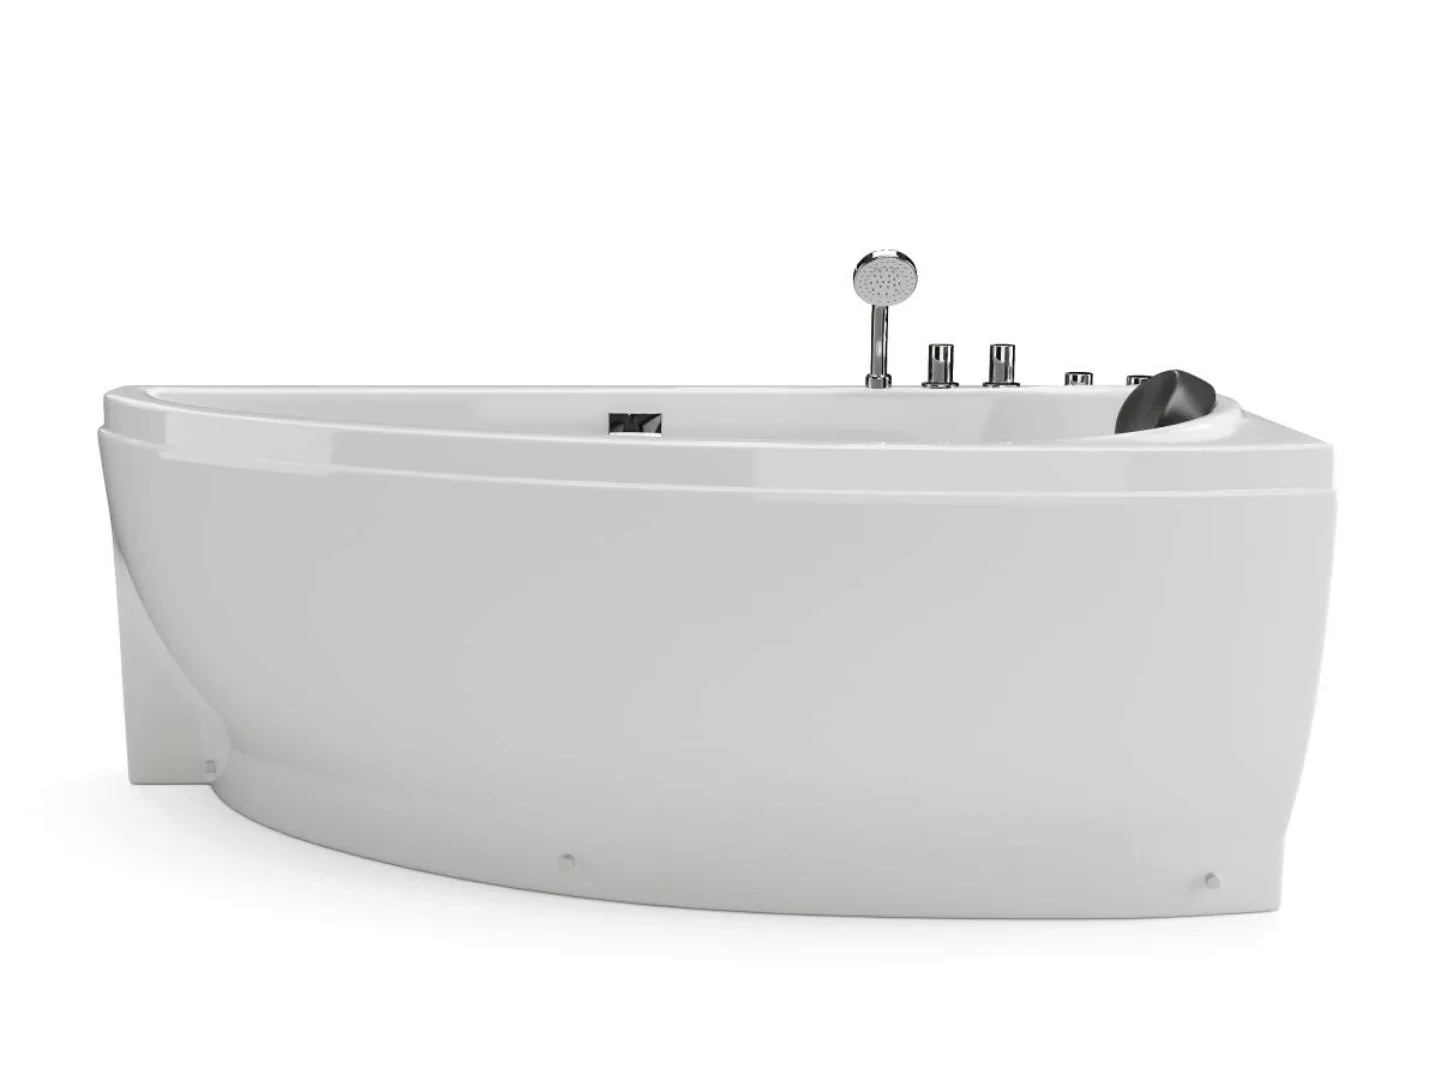 Whirlpool-Badewanne asymmetrisch - Weiß - 1 Person - 160 x 75 cm - Ecke rec günstig online kaufen